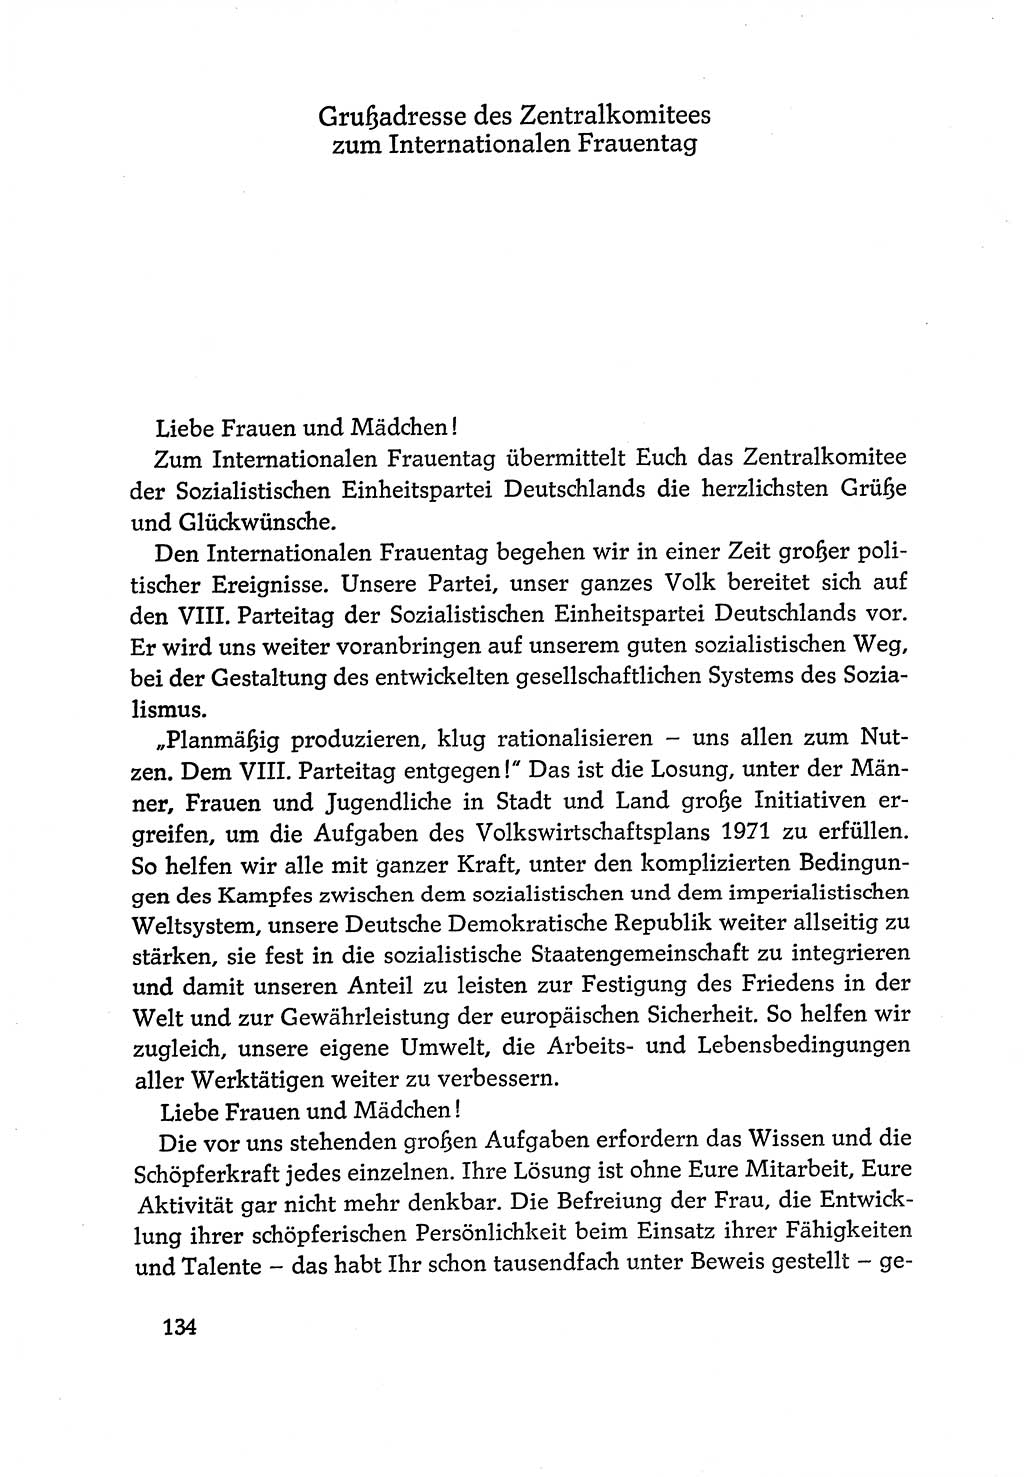 Dokumente der Sozialistischen Einheitspartei Deutschlands (SED) [Deutsche Demokratische Republik (DDR)] 1970-1971, Seite 134 (Dok. SED DDR 1970-1971, S. 134)